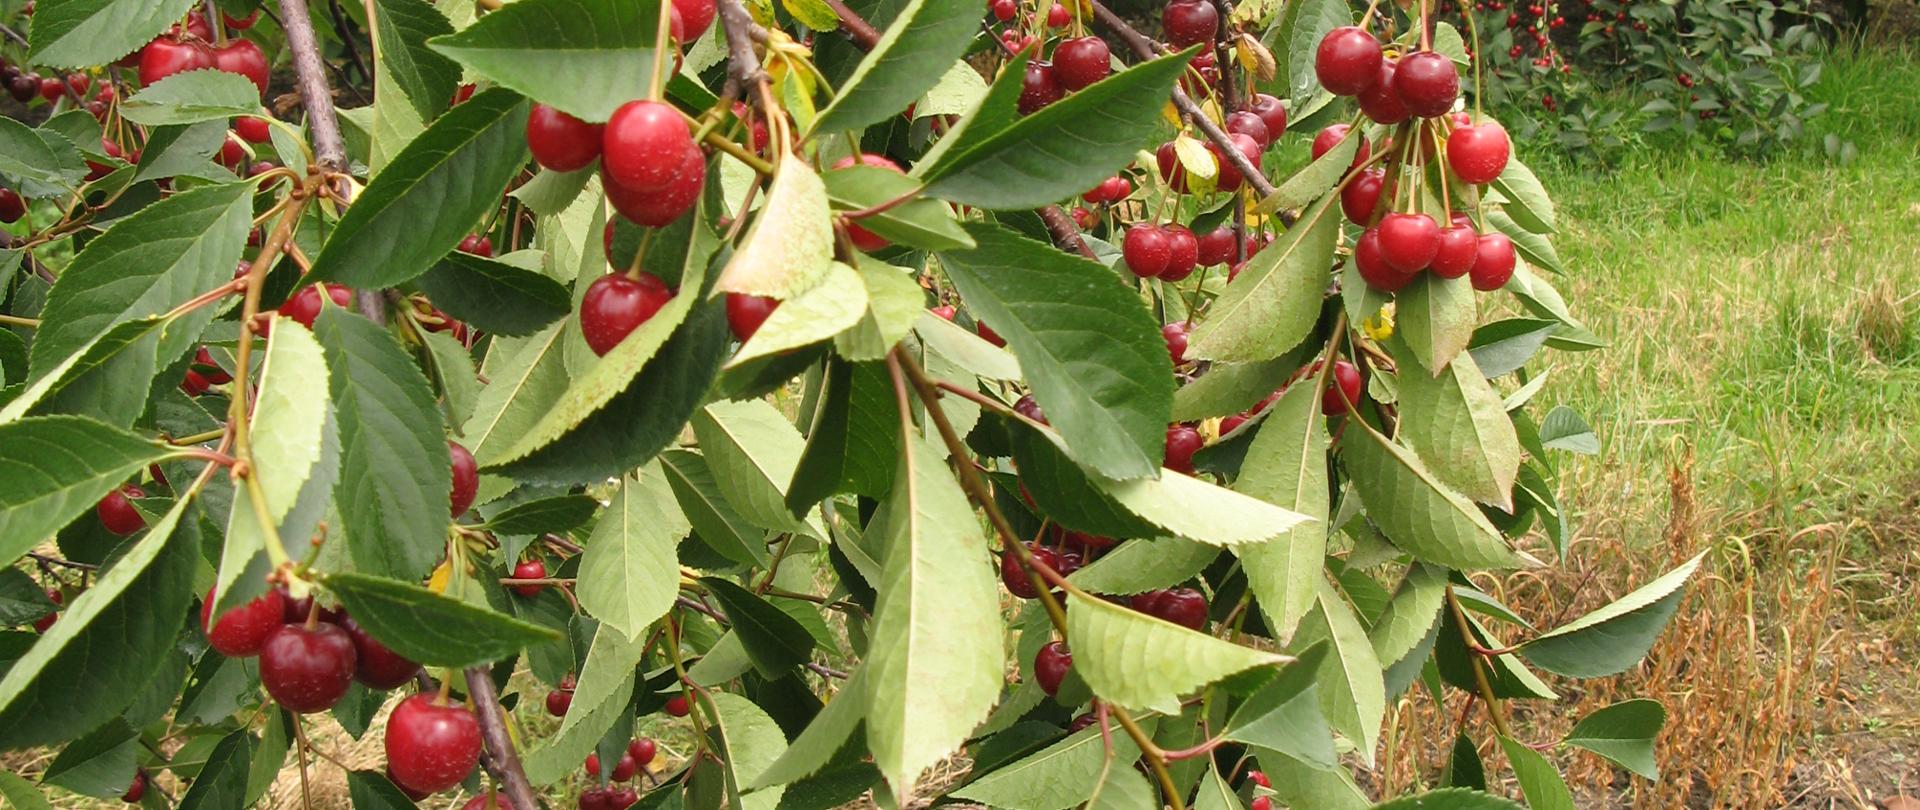 Na zdjęciu widać drzewo wiśni z czerwonymi owocami wiszącymi na gałęziach. 